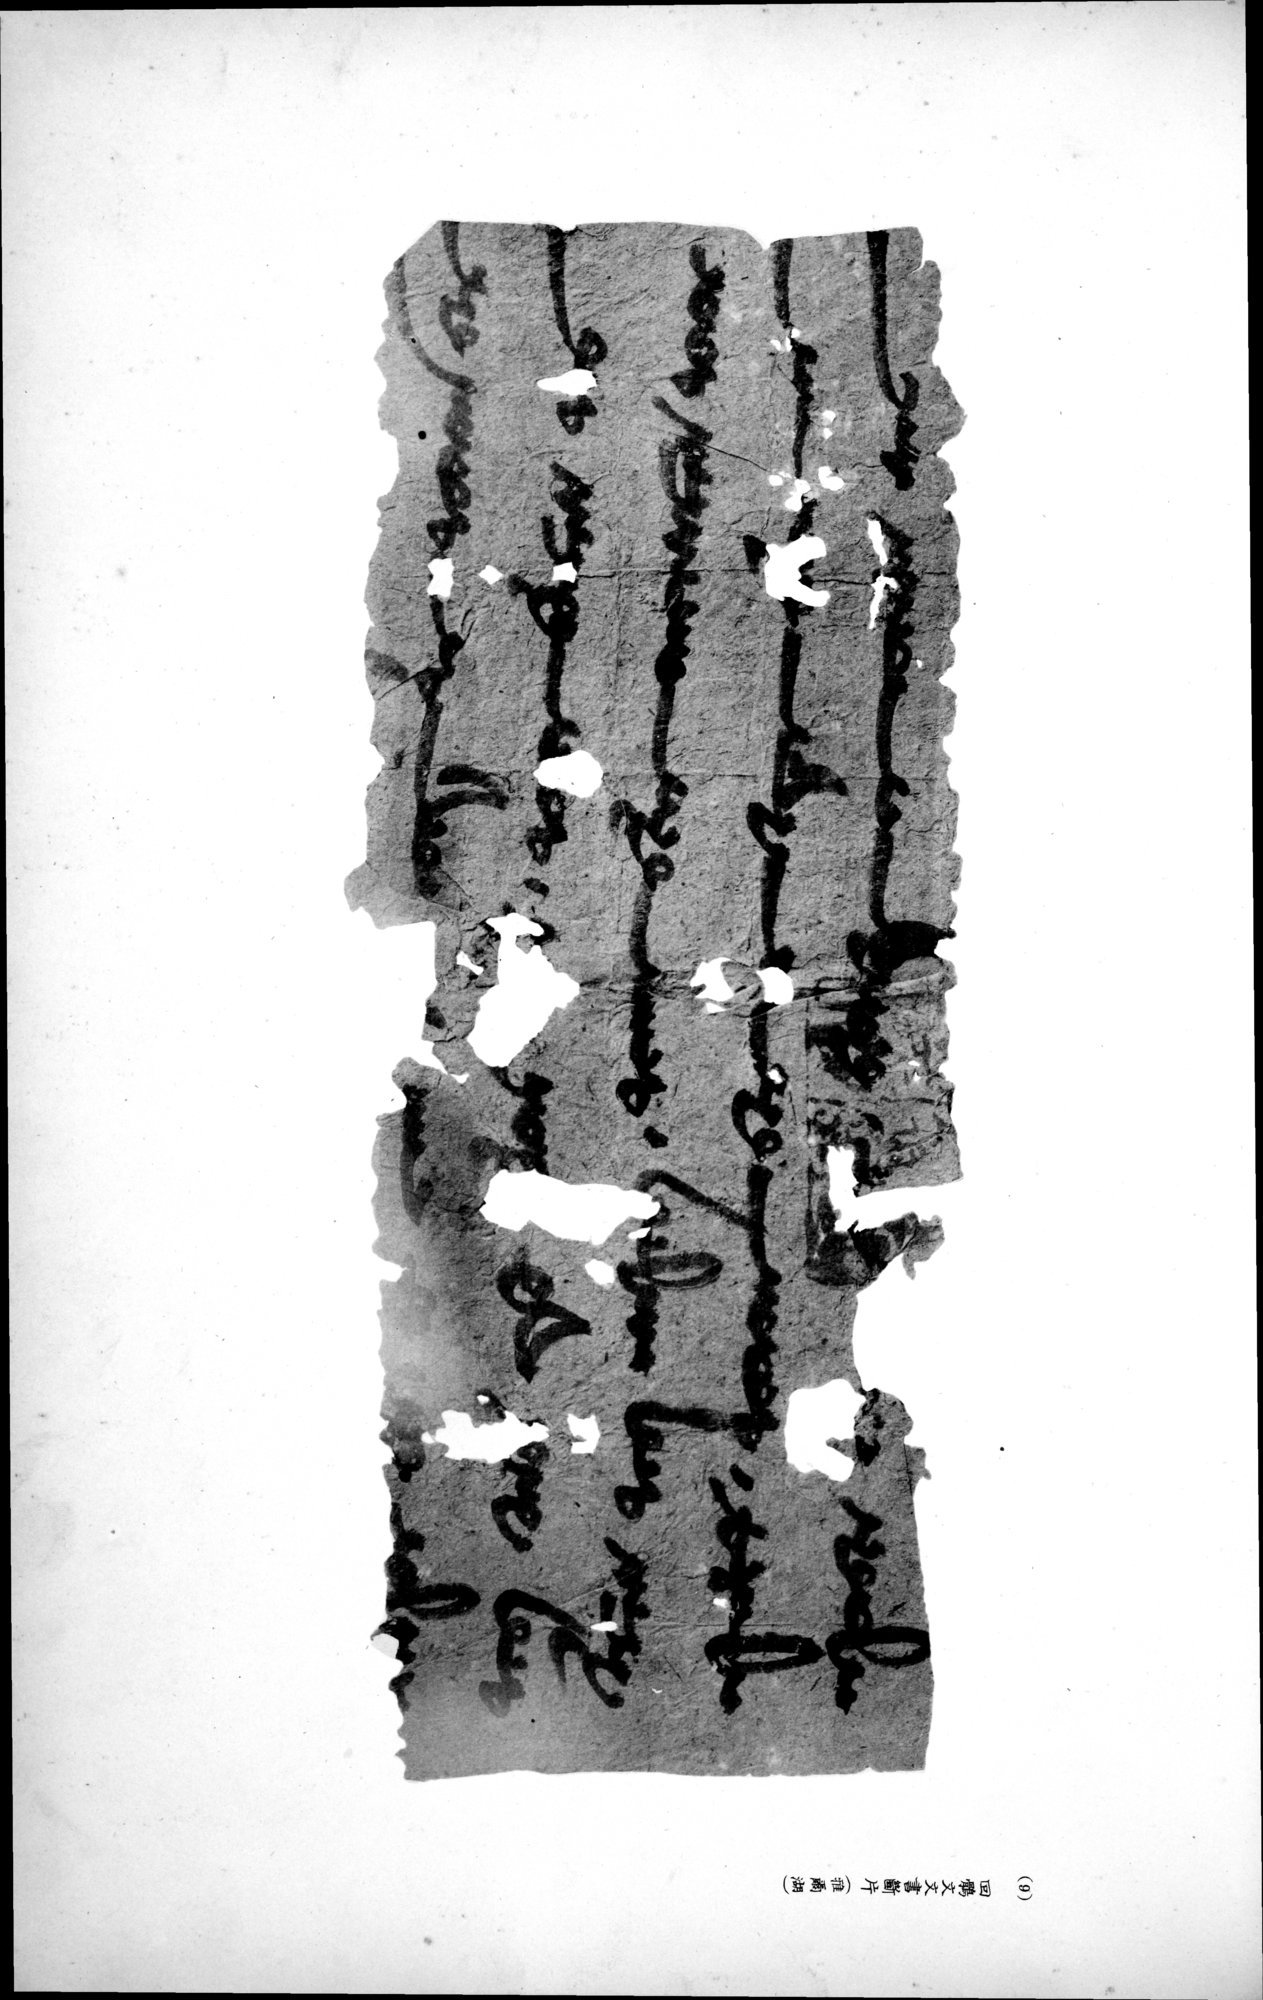 西域考古図譜 : vol.2 / Page 271 (Grayscale High Resolution Image)